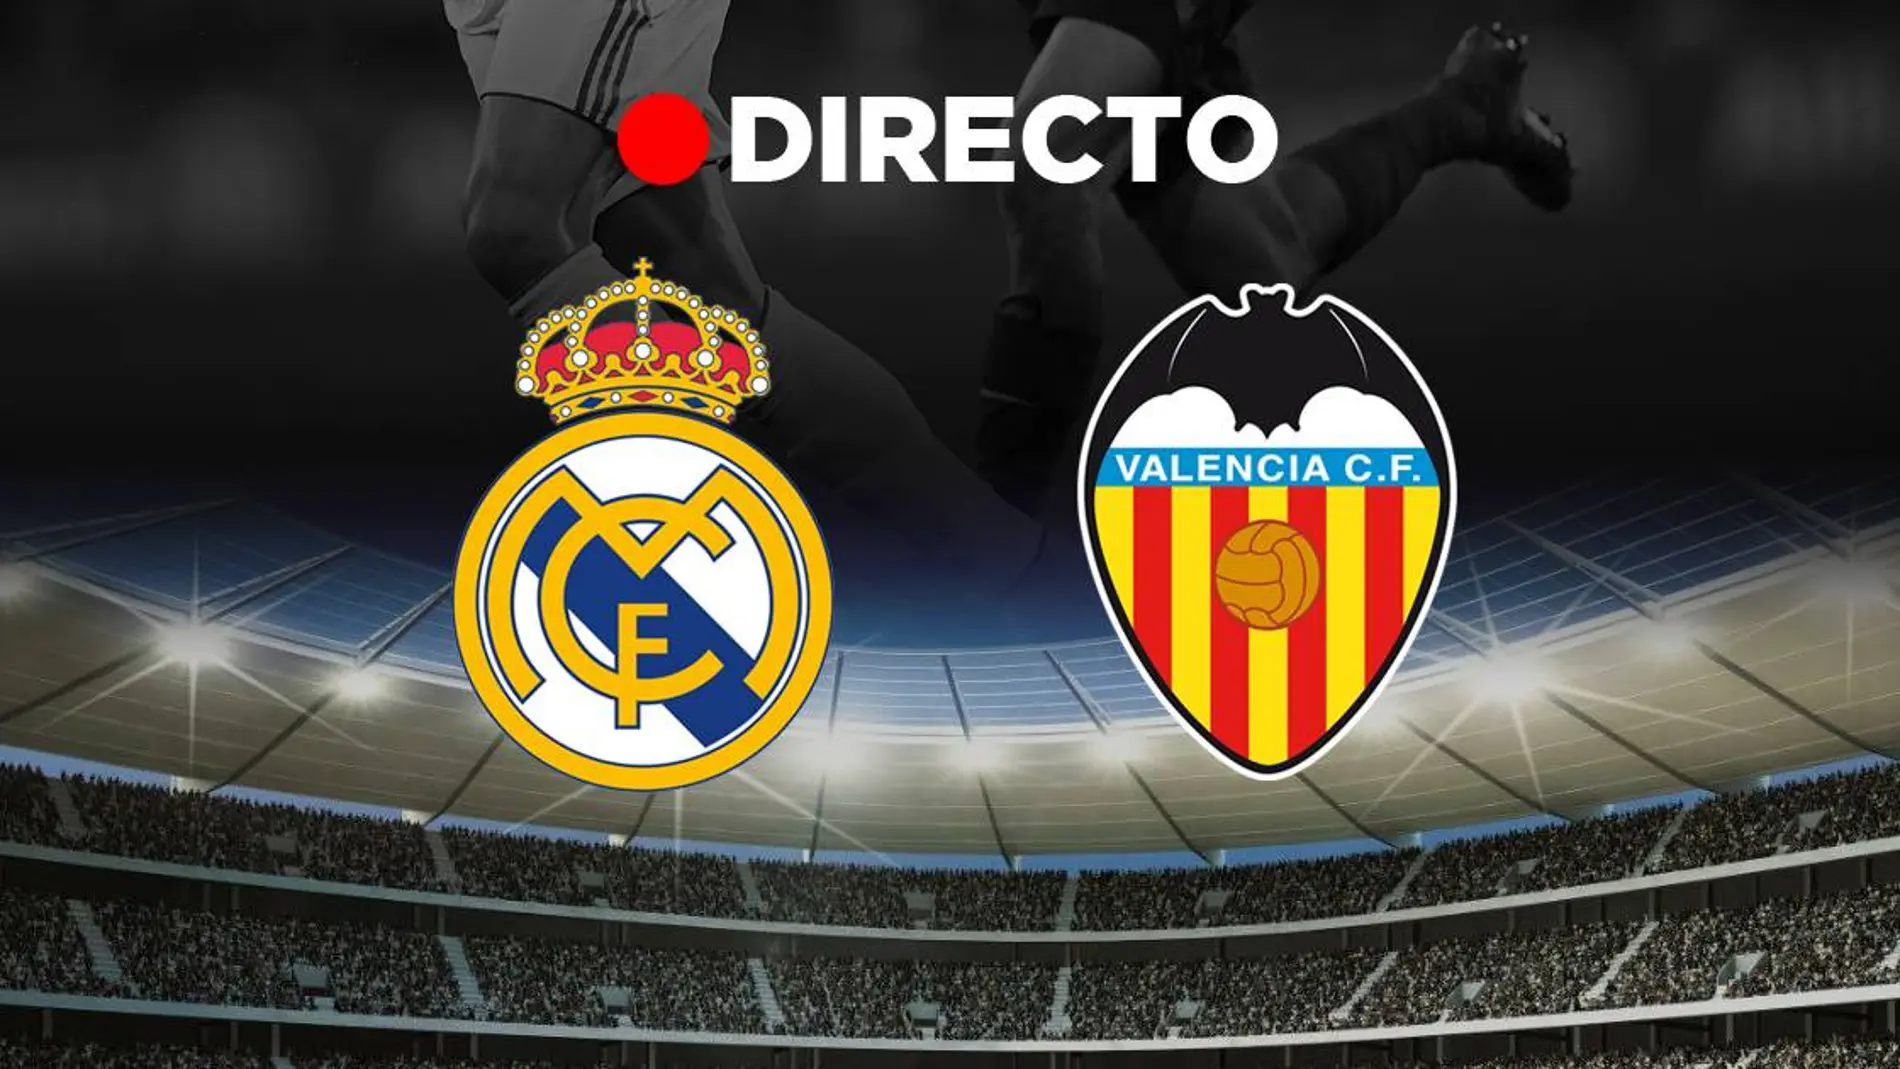 Real Madrid - Valencia Resultado del partido de hoy de LaLiga fútbol, en directo